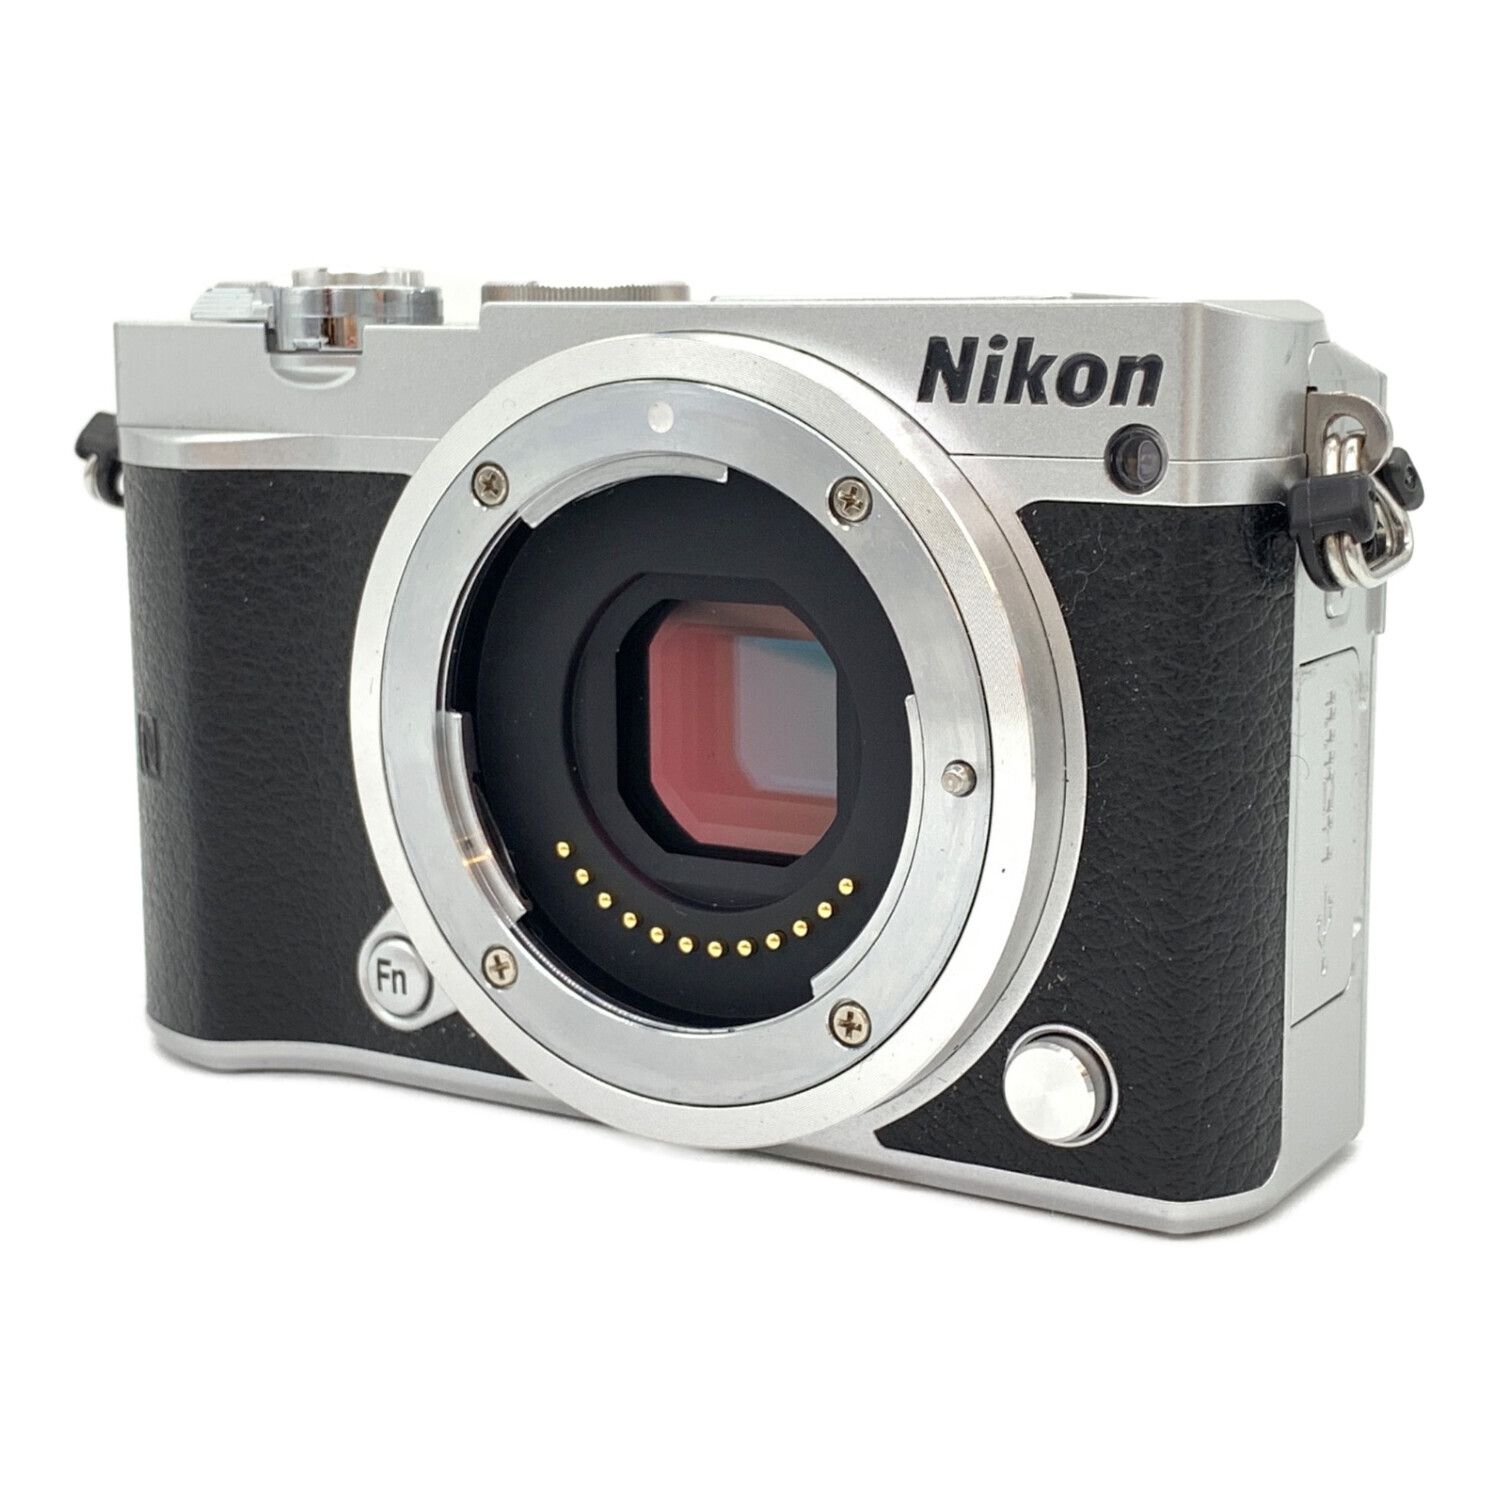 Nikon (ニコン) ミラーレス一眼カメラ パワーズームレンズキット 